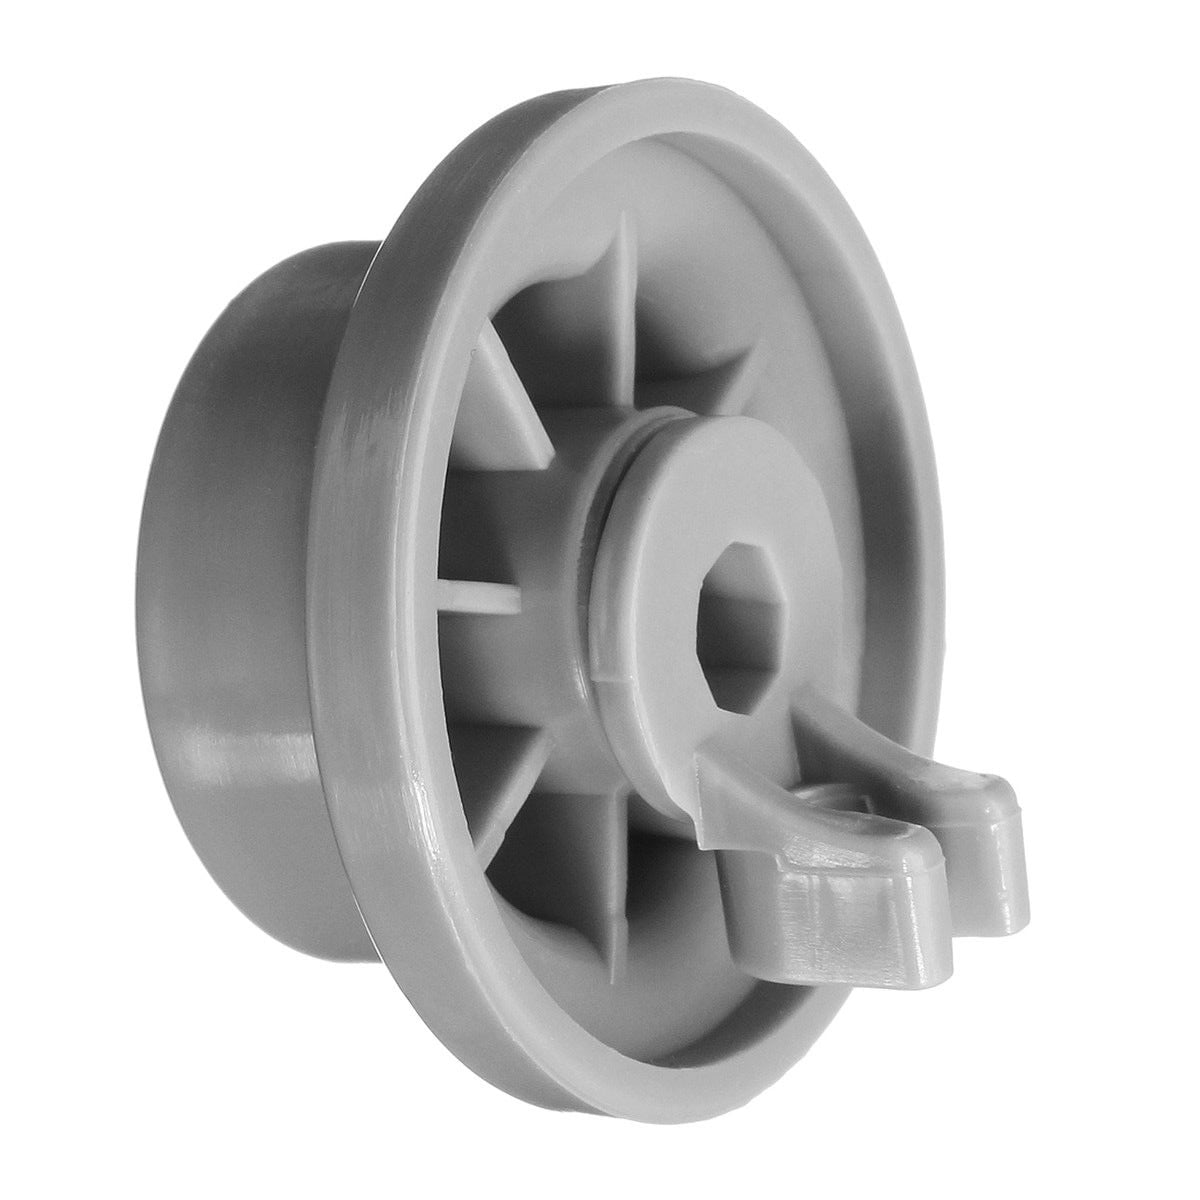 Bosch Neff slimline dishwasher top upper basket wheels X 4 